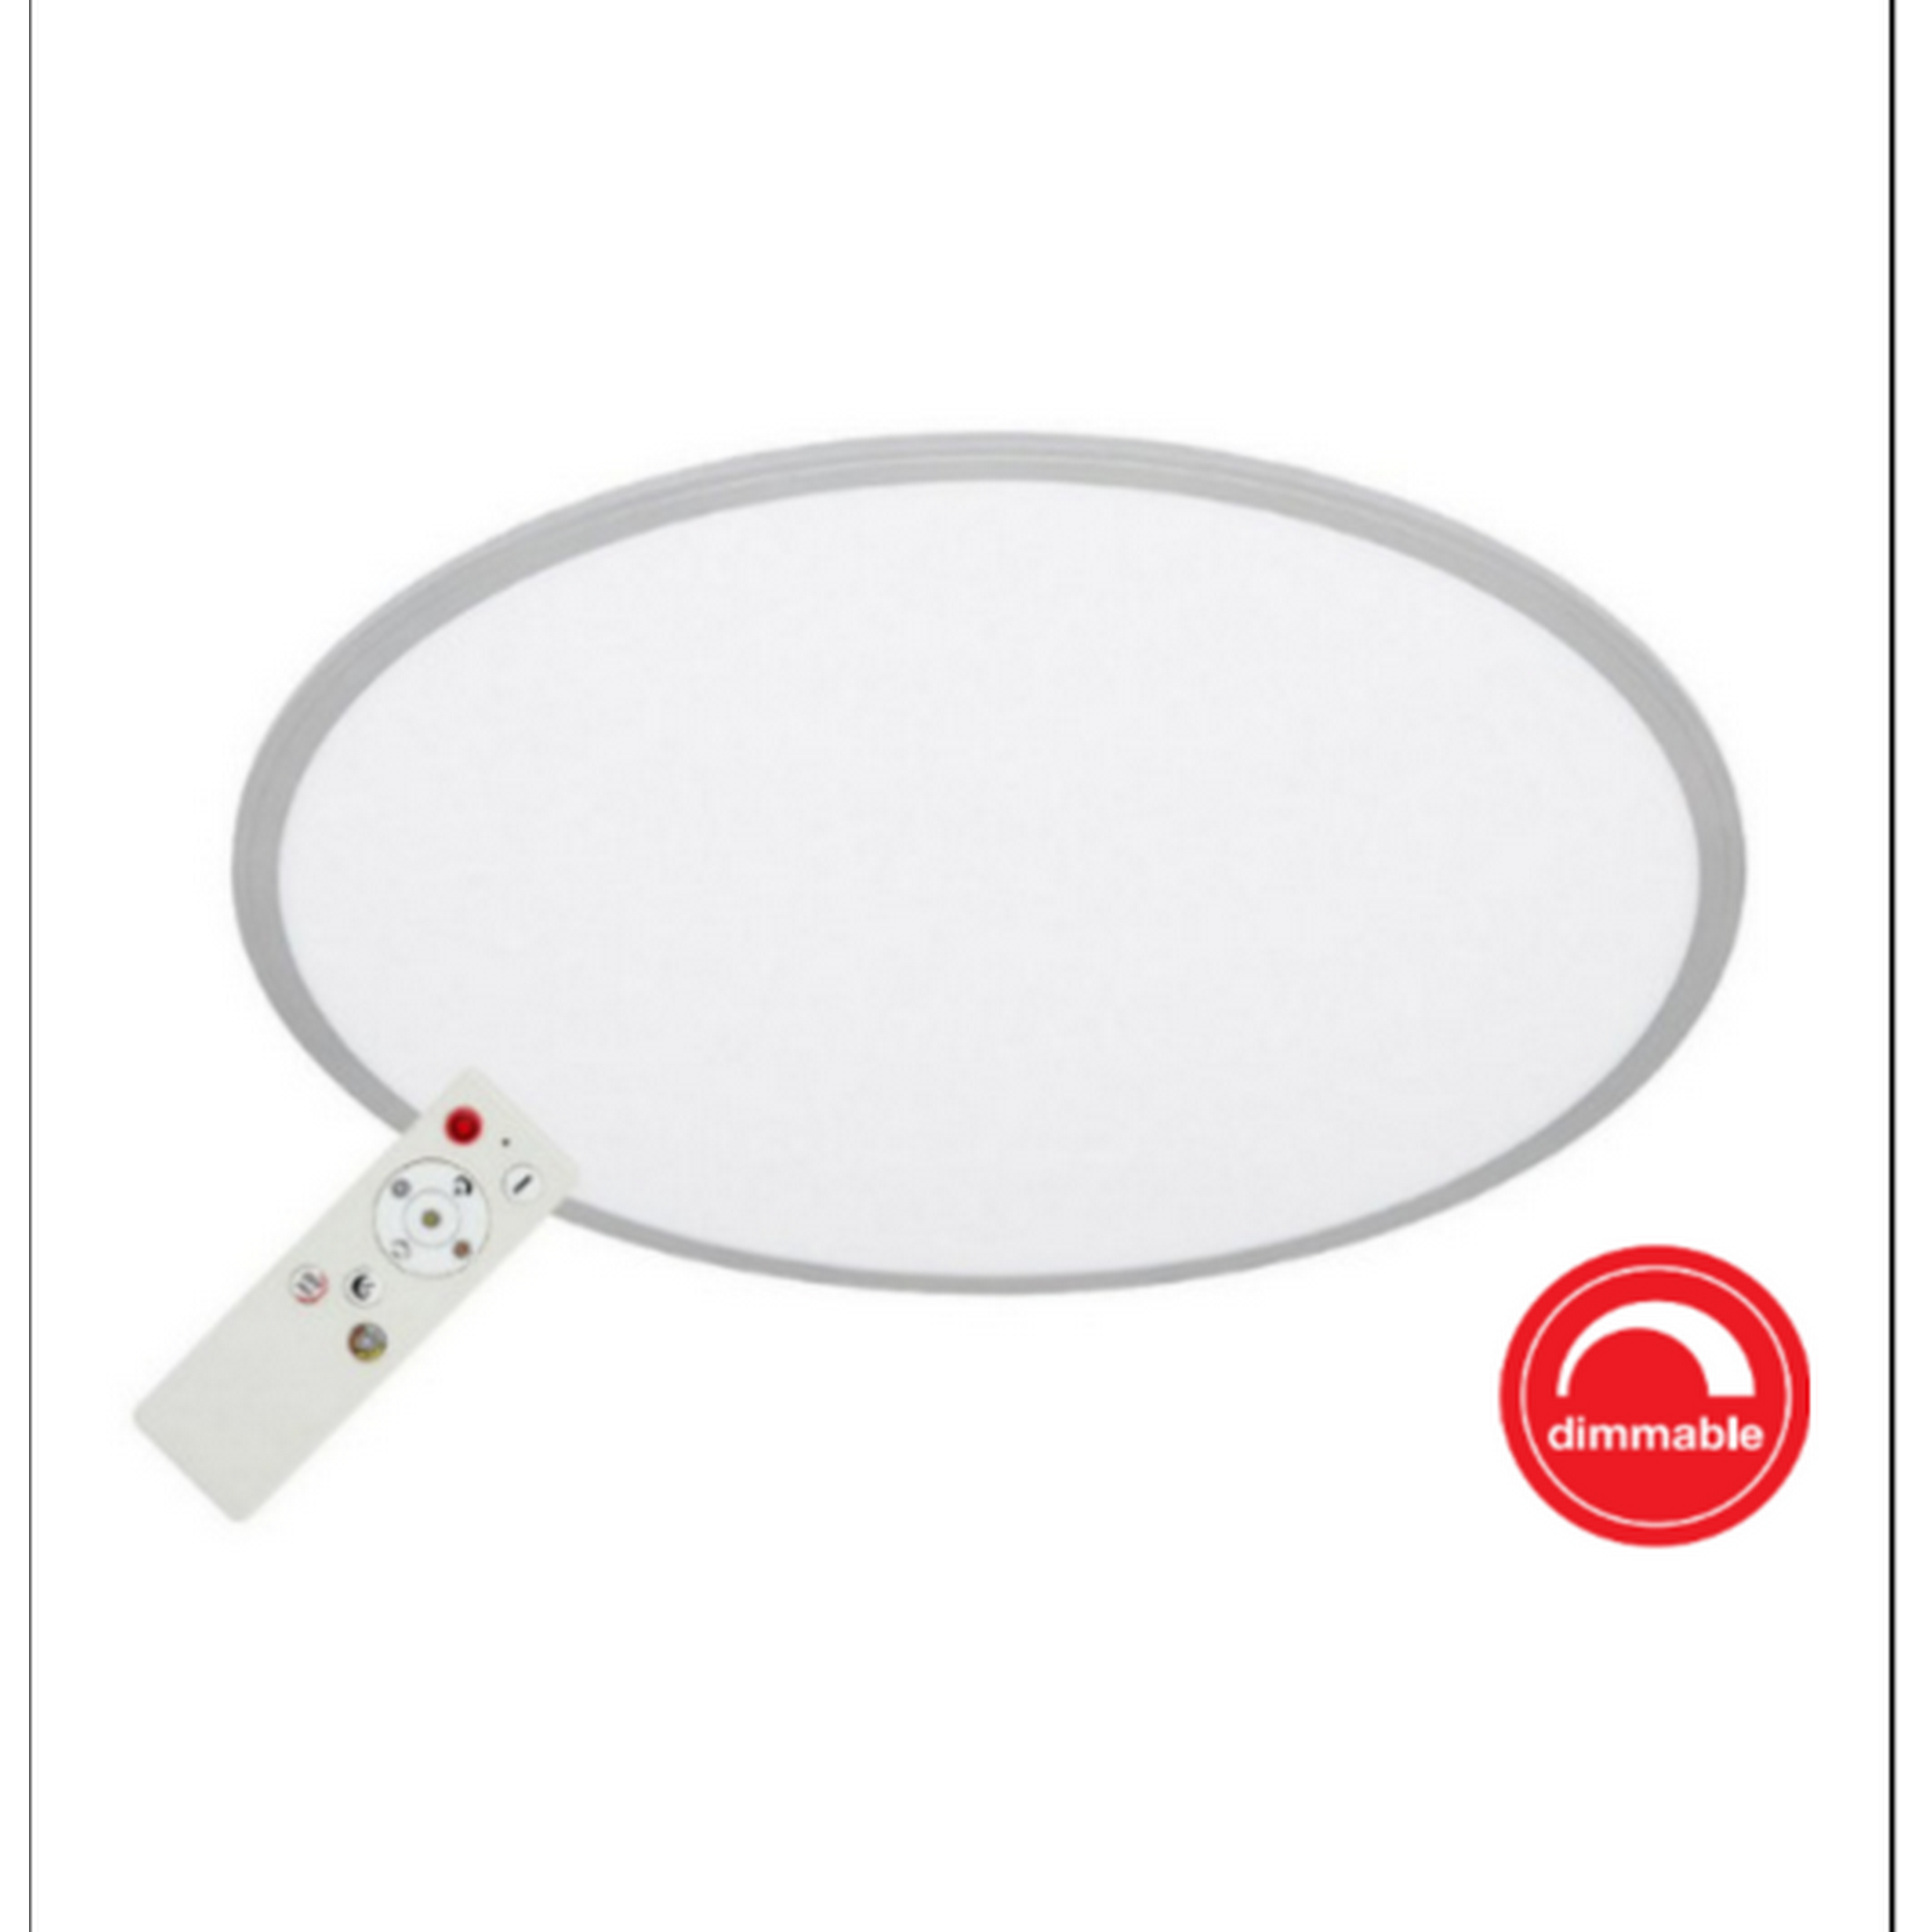 LED-Deckenleuchte weiß/silber Ø 76 cm, mit Fernbedienung + product picture